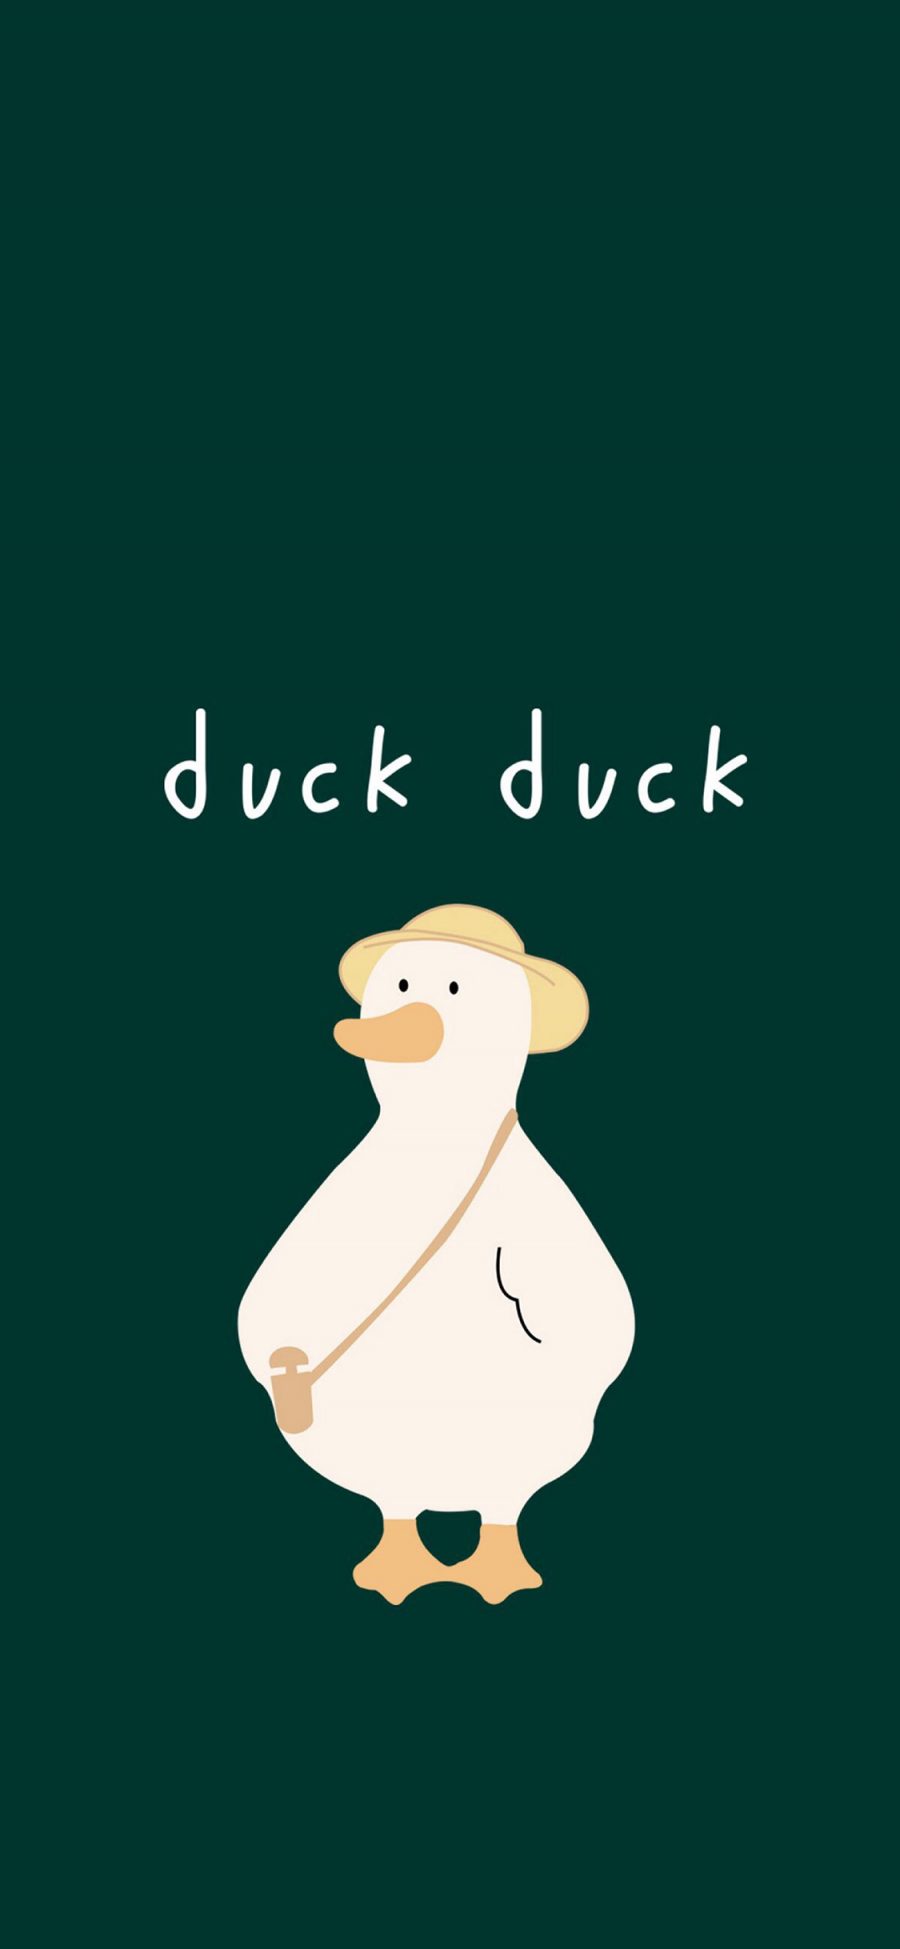 [2436×1125]绿色背景 鸭子 卡通 duck duck 苹果手机动漫壁纸图片